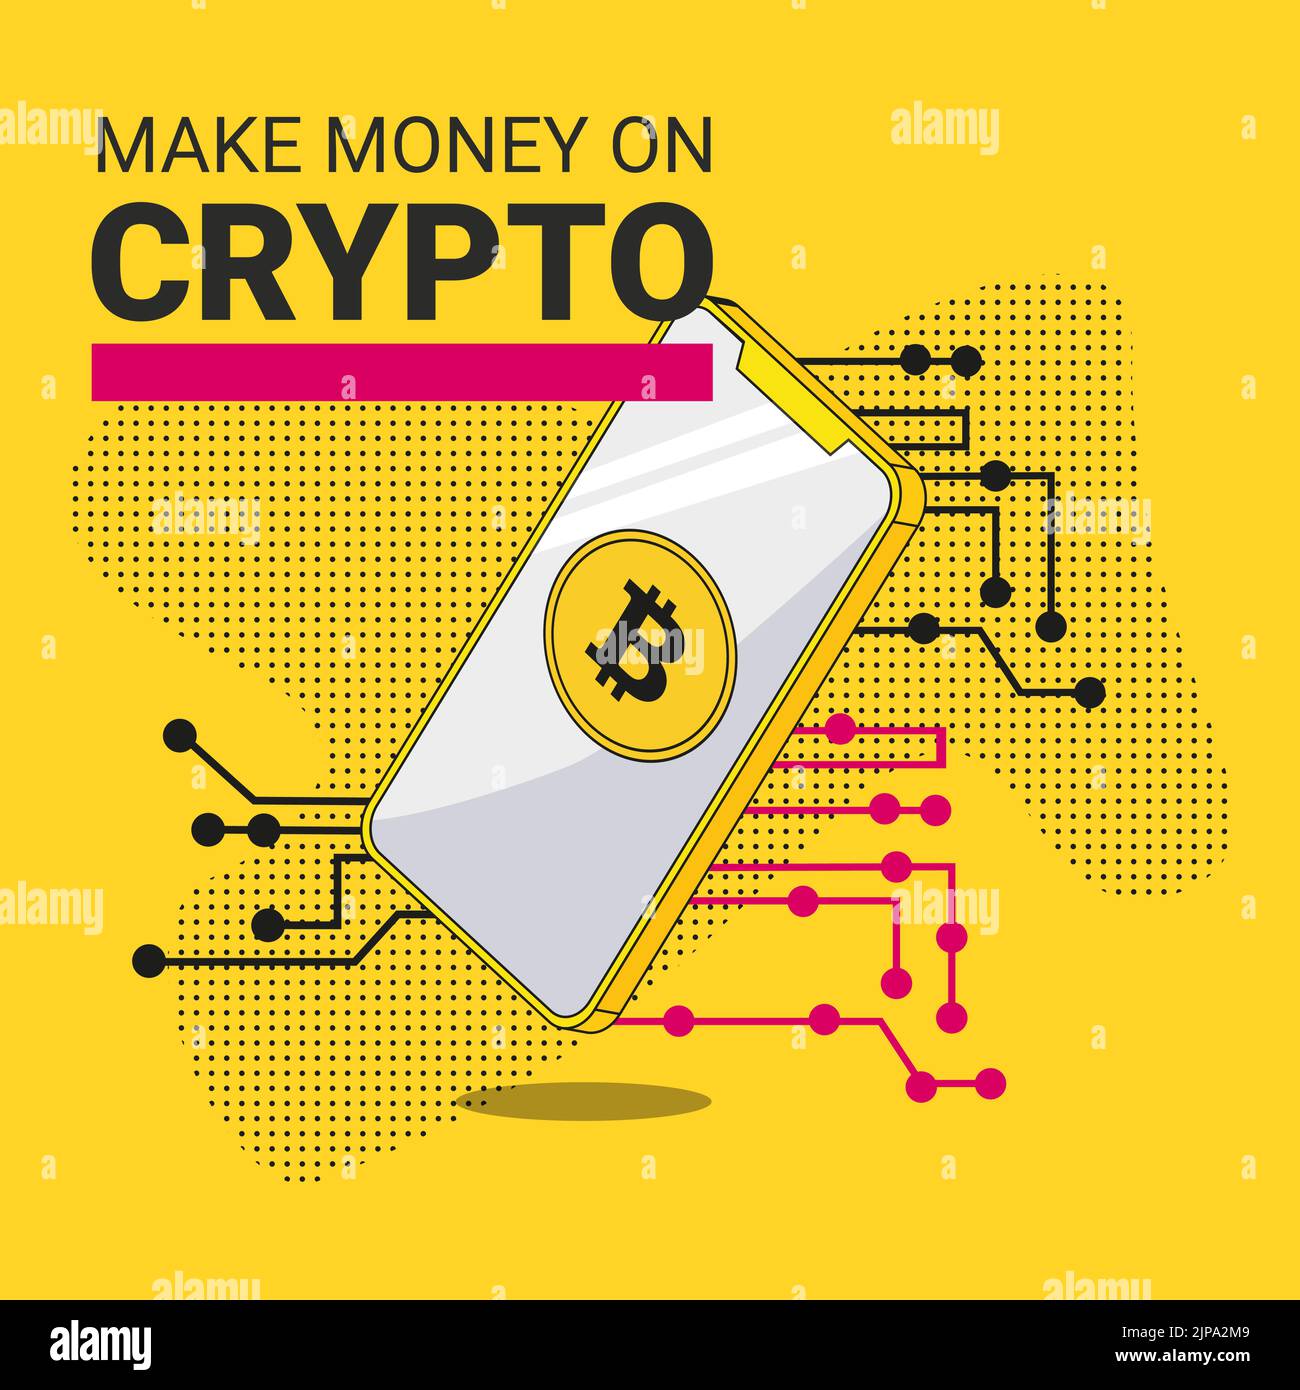 Die Inschrift Make Money auf der Krypta und ein Smartphone auf dem Display, auf dem eine Bitcoin-Münze vor dem Hintergrund einer Mikroschaltung abgebildet ist Stock Vektor